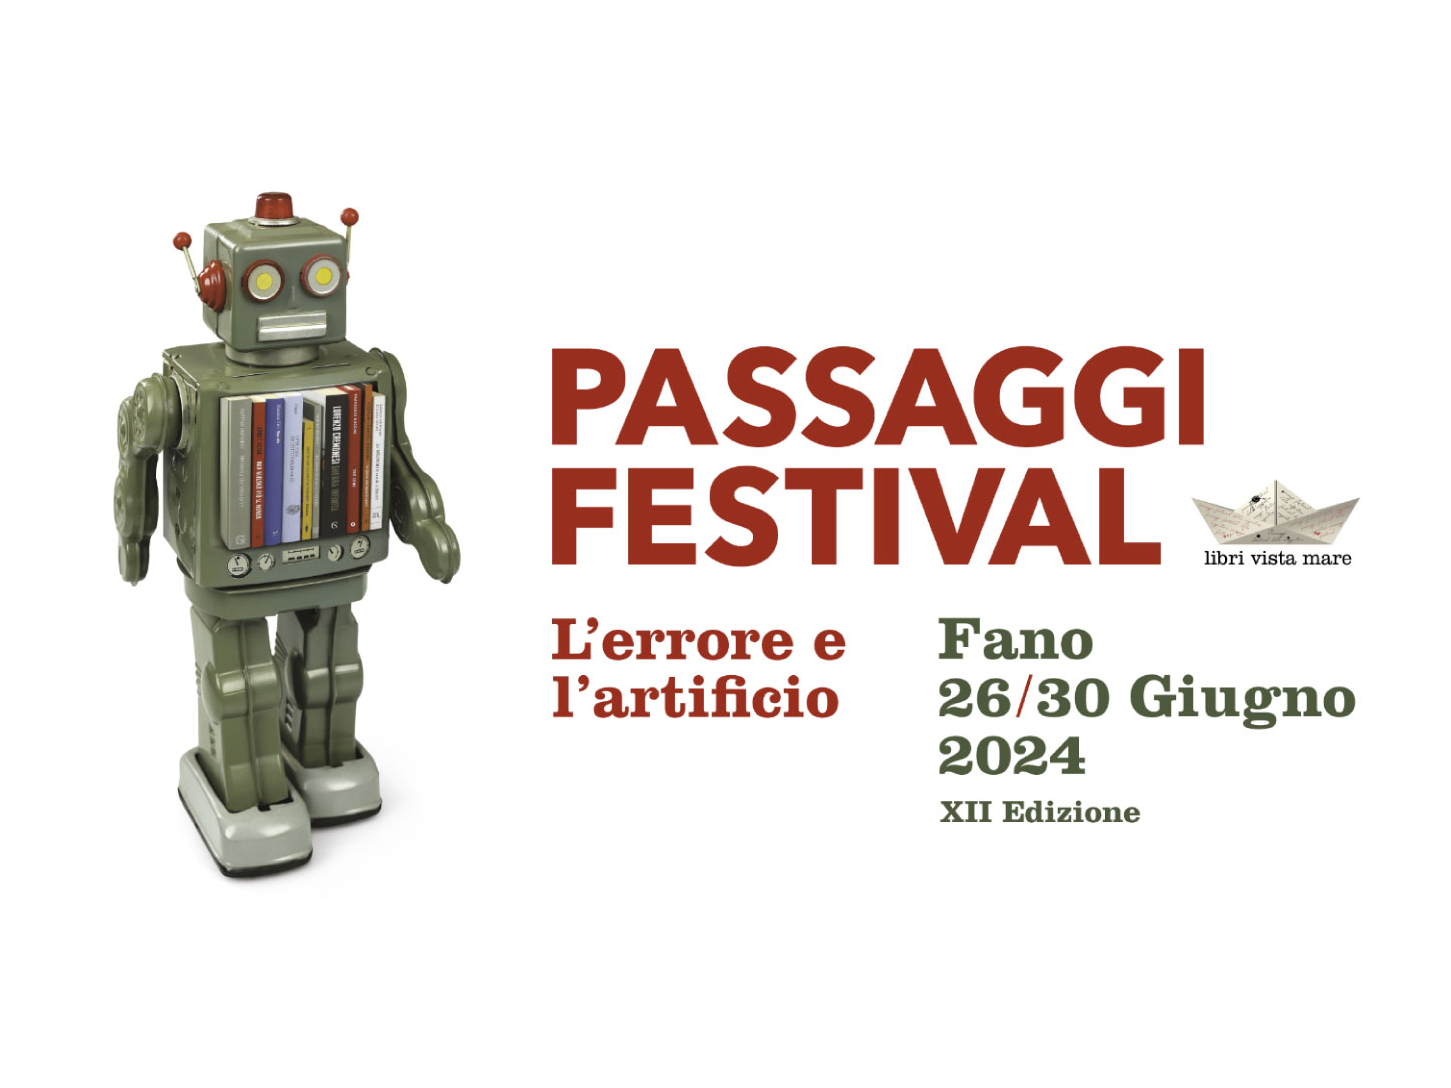 Tutto pronto per il Passaggi Festival a Fano: ecco il programma definitivo